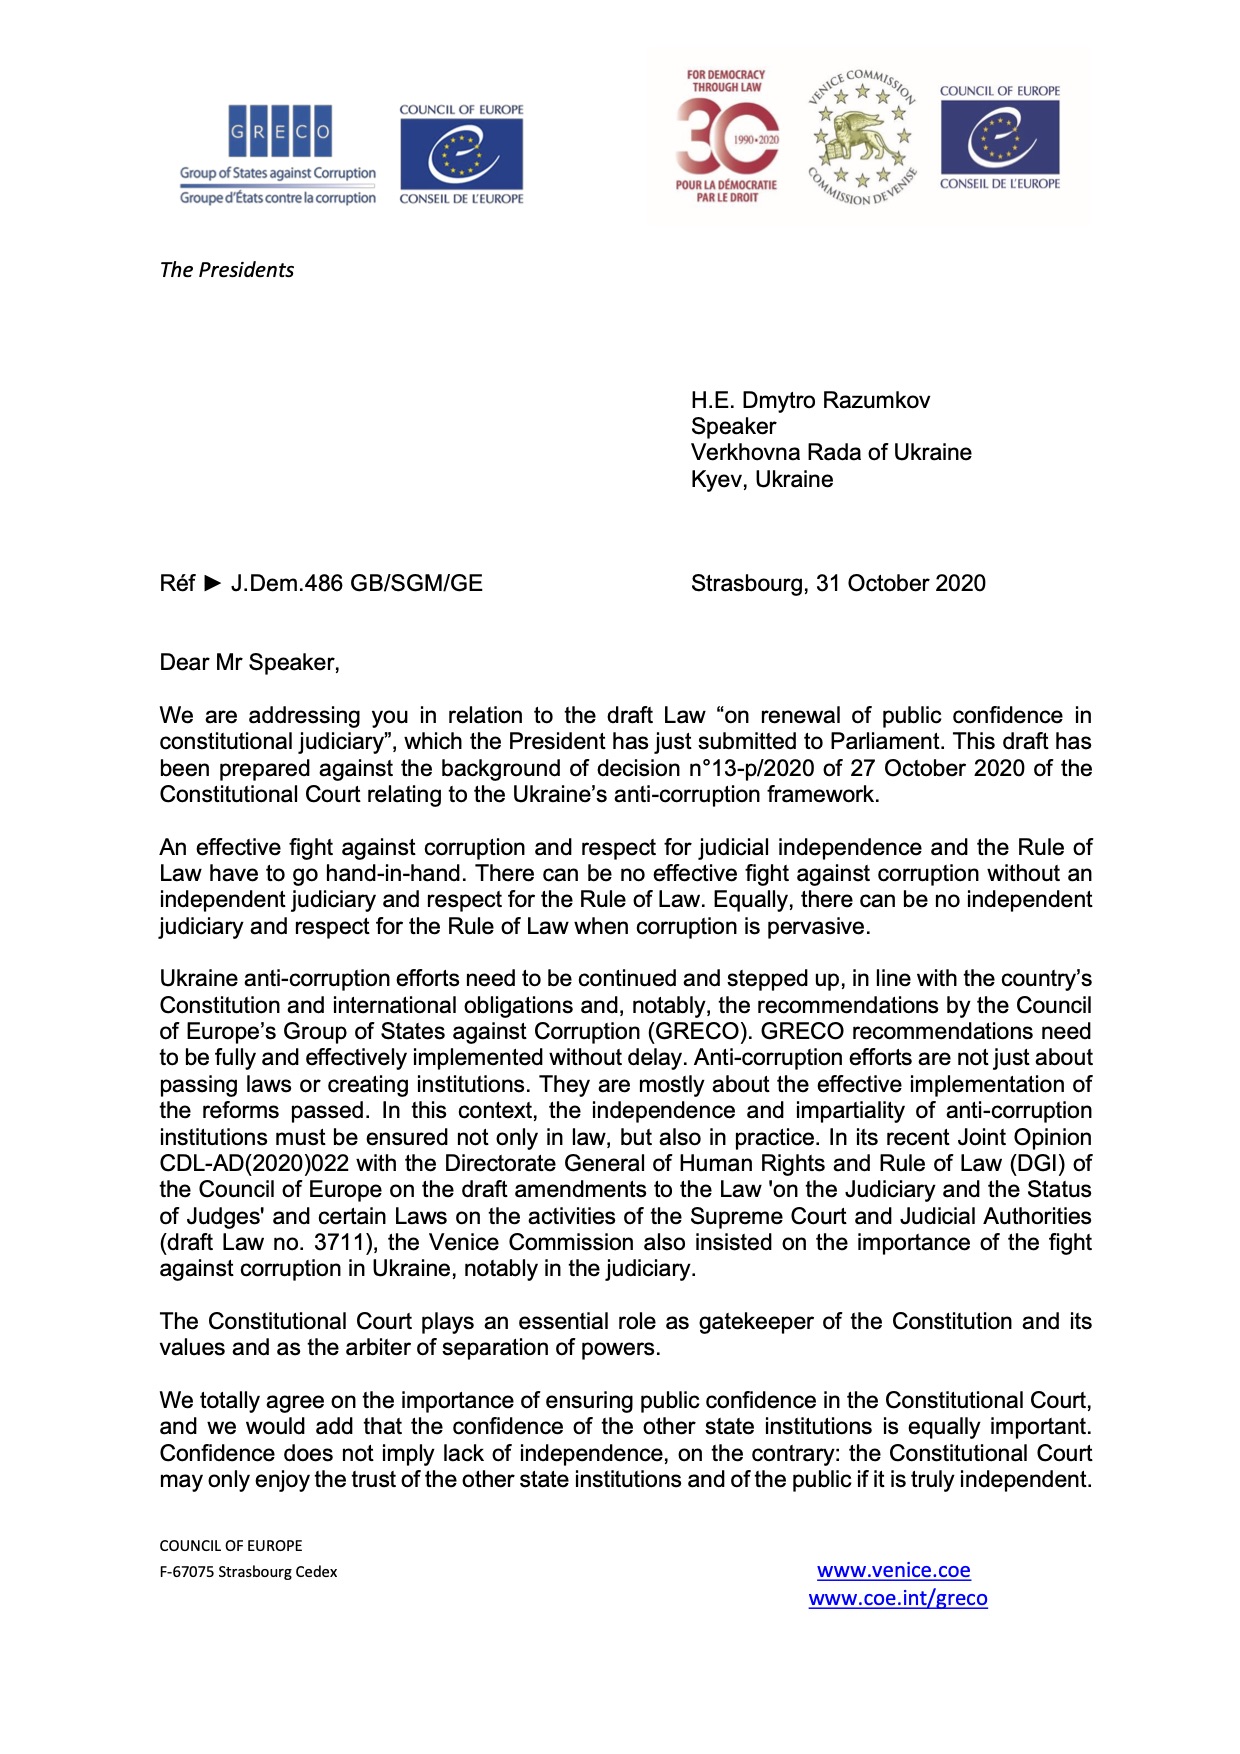 Письмо Венецианской комиссии спикеру Верховной Рады